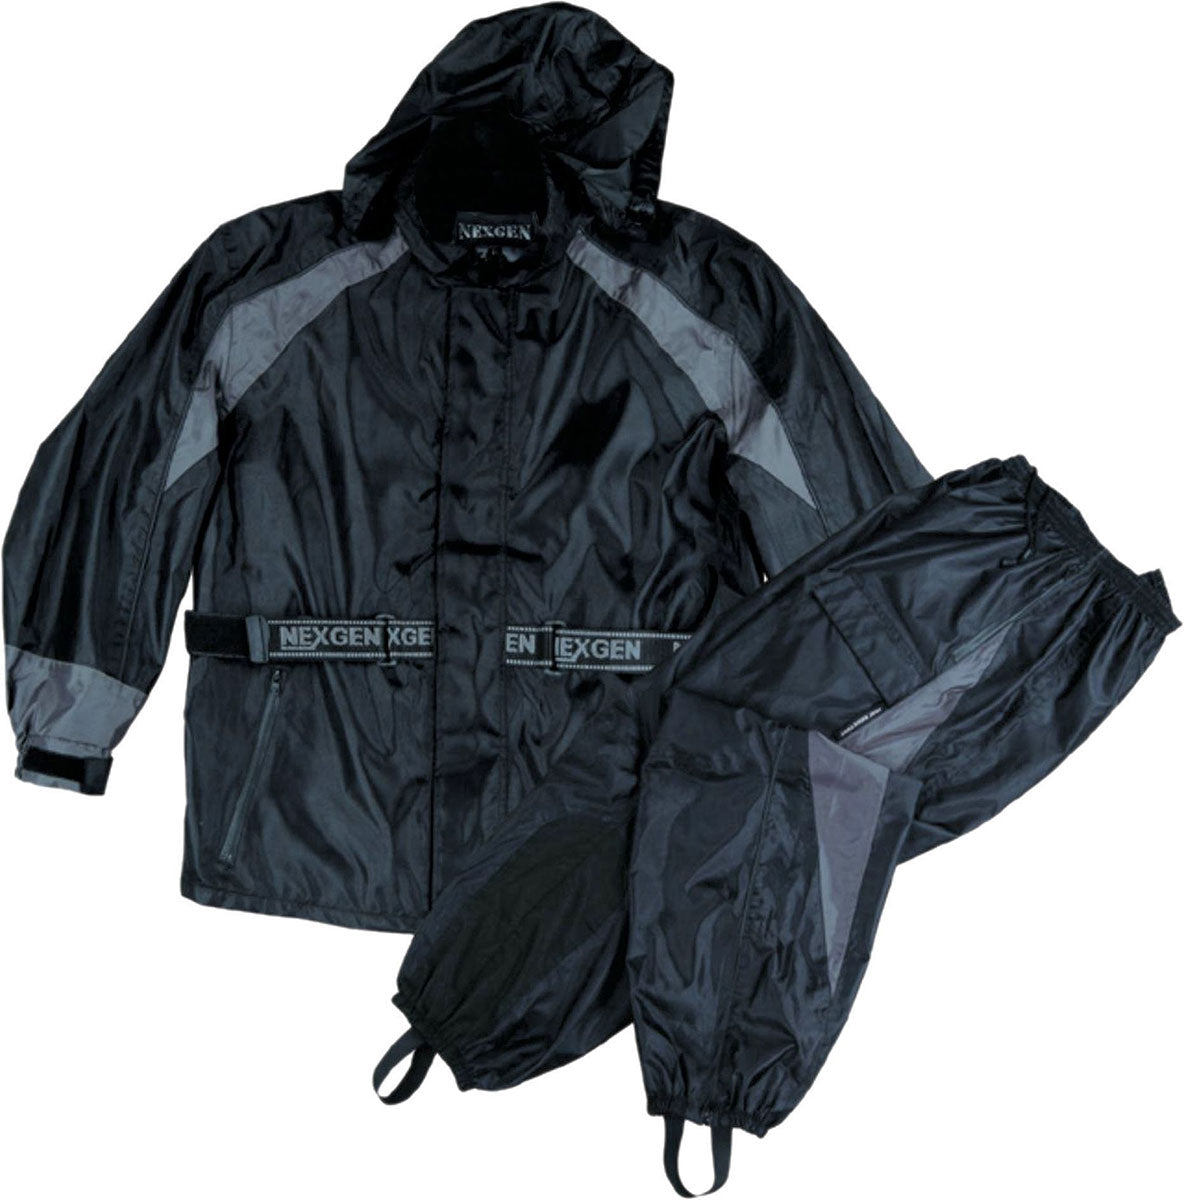 NexGen Men's SH2050 Black and Grey Hooded Water Proof Armored Rain Suit